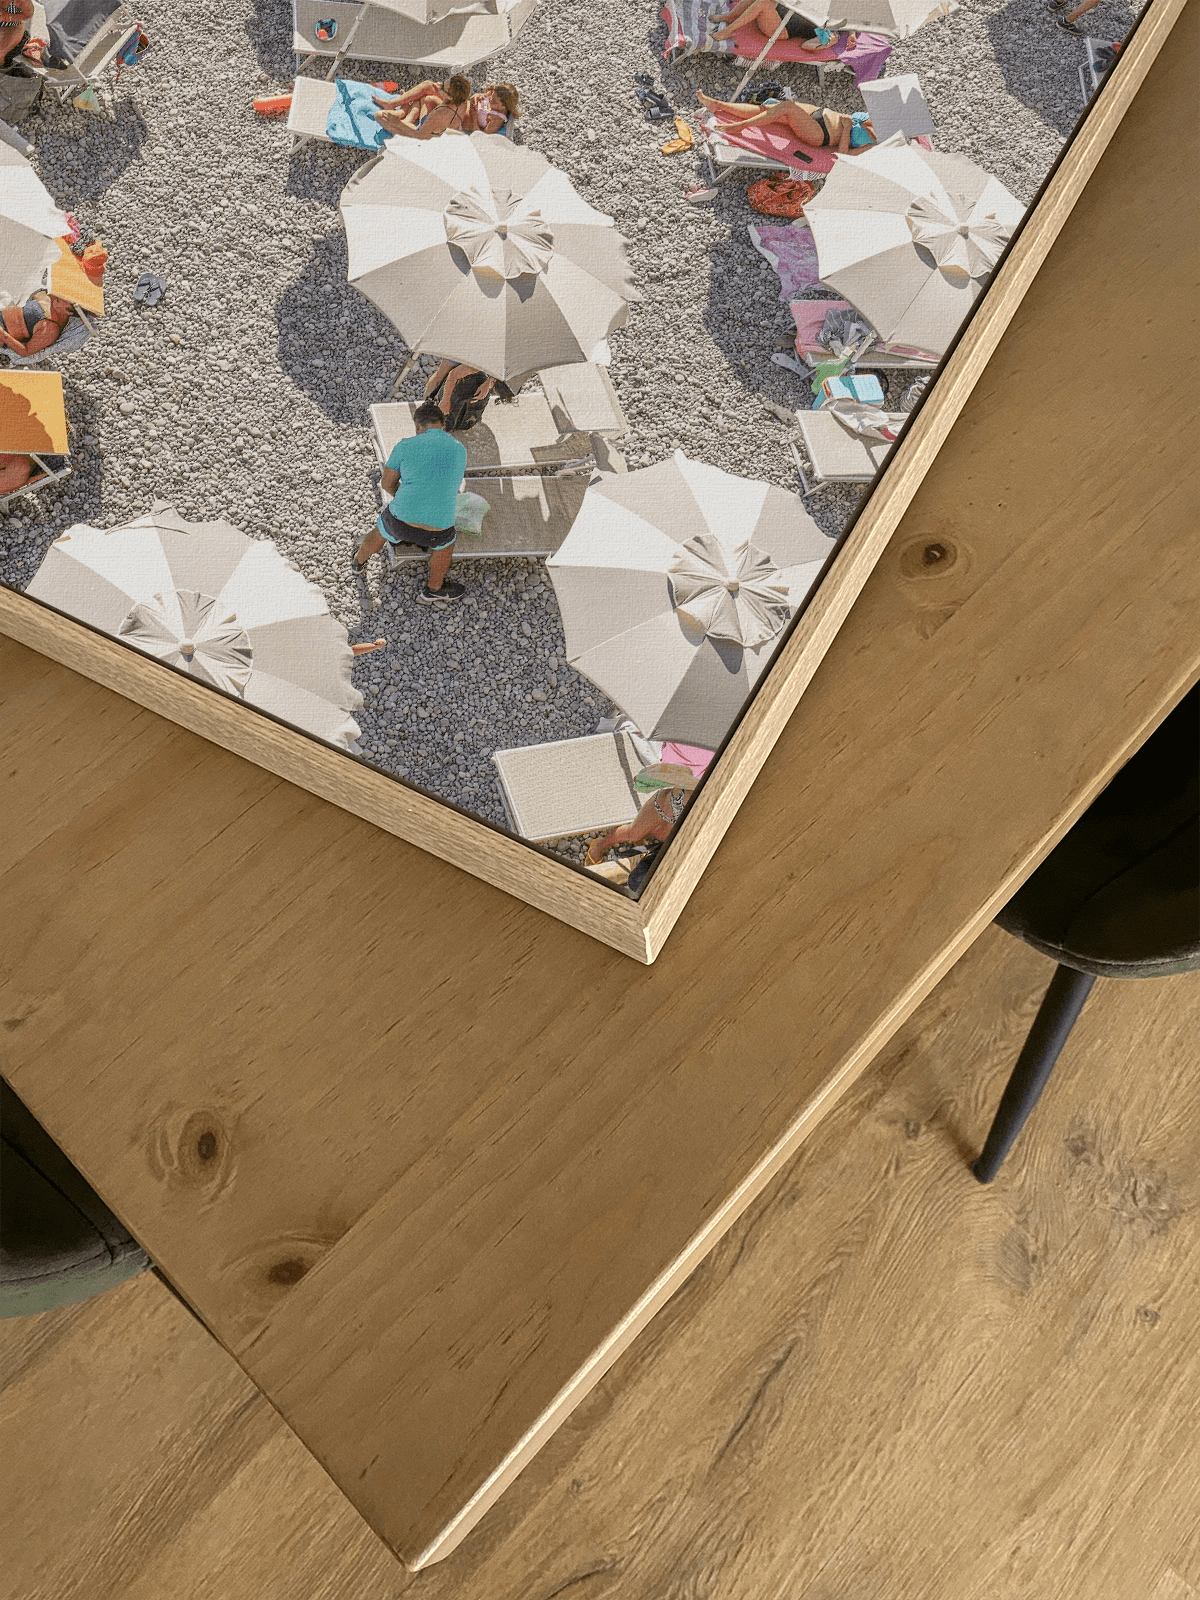 Amalfi Beach Umbrellas - Lámina de Henrike Schenk - Decora tu casa en Nomadart